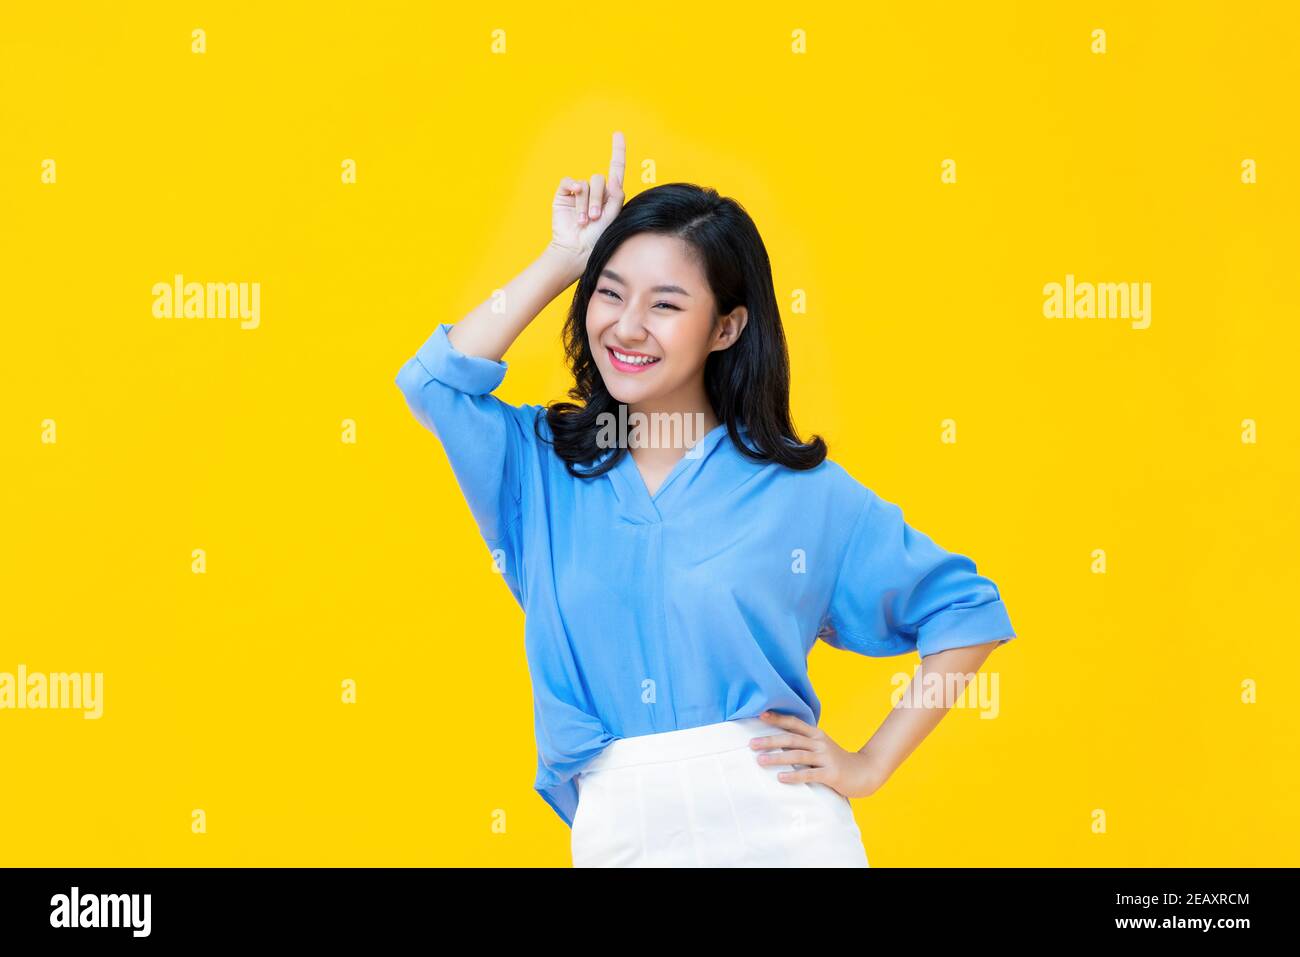 Fröhliche junge asiatische Frau in lässiger Kleidung stehen mit einem Hand auf Taille, während andere angehoben gestikulieren sie ist die Am besten vor gelbem Hintergrund Stockfoto